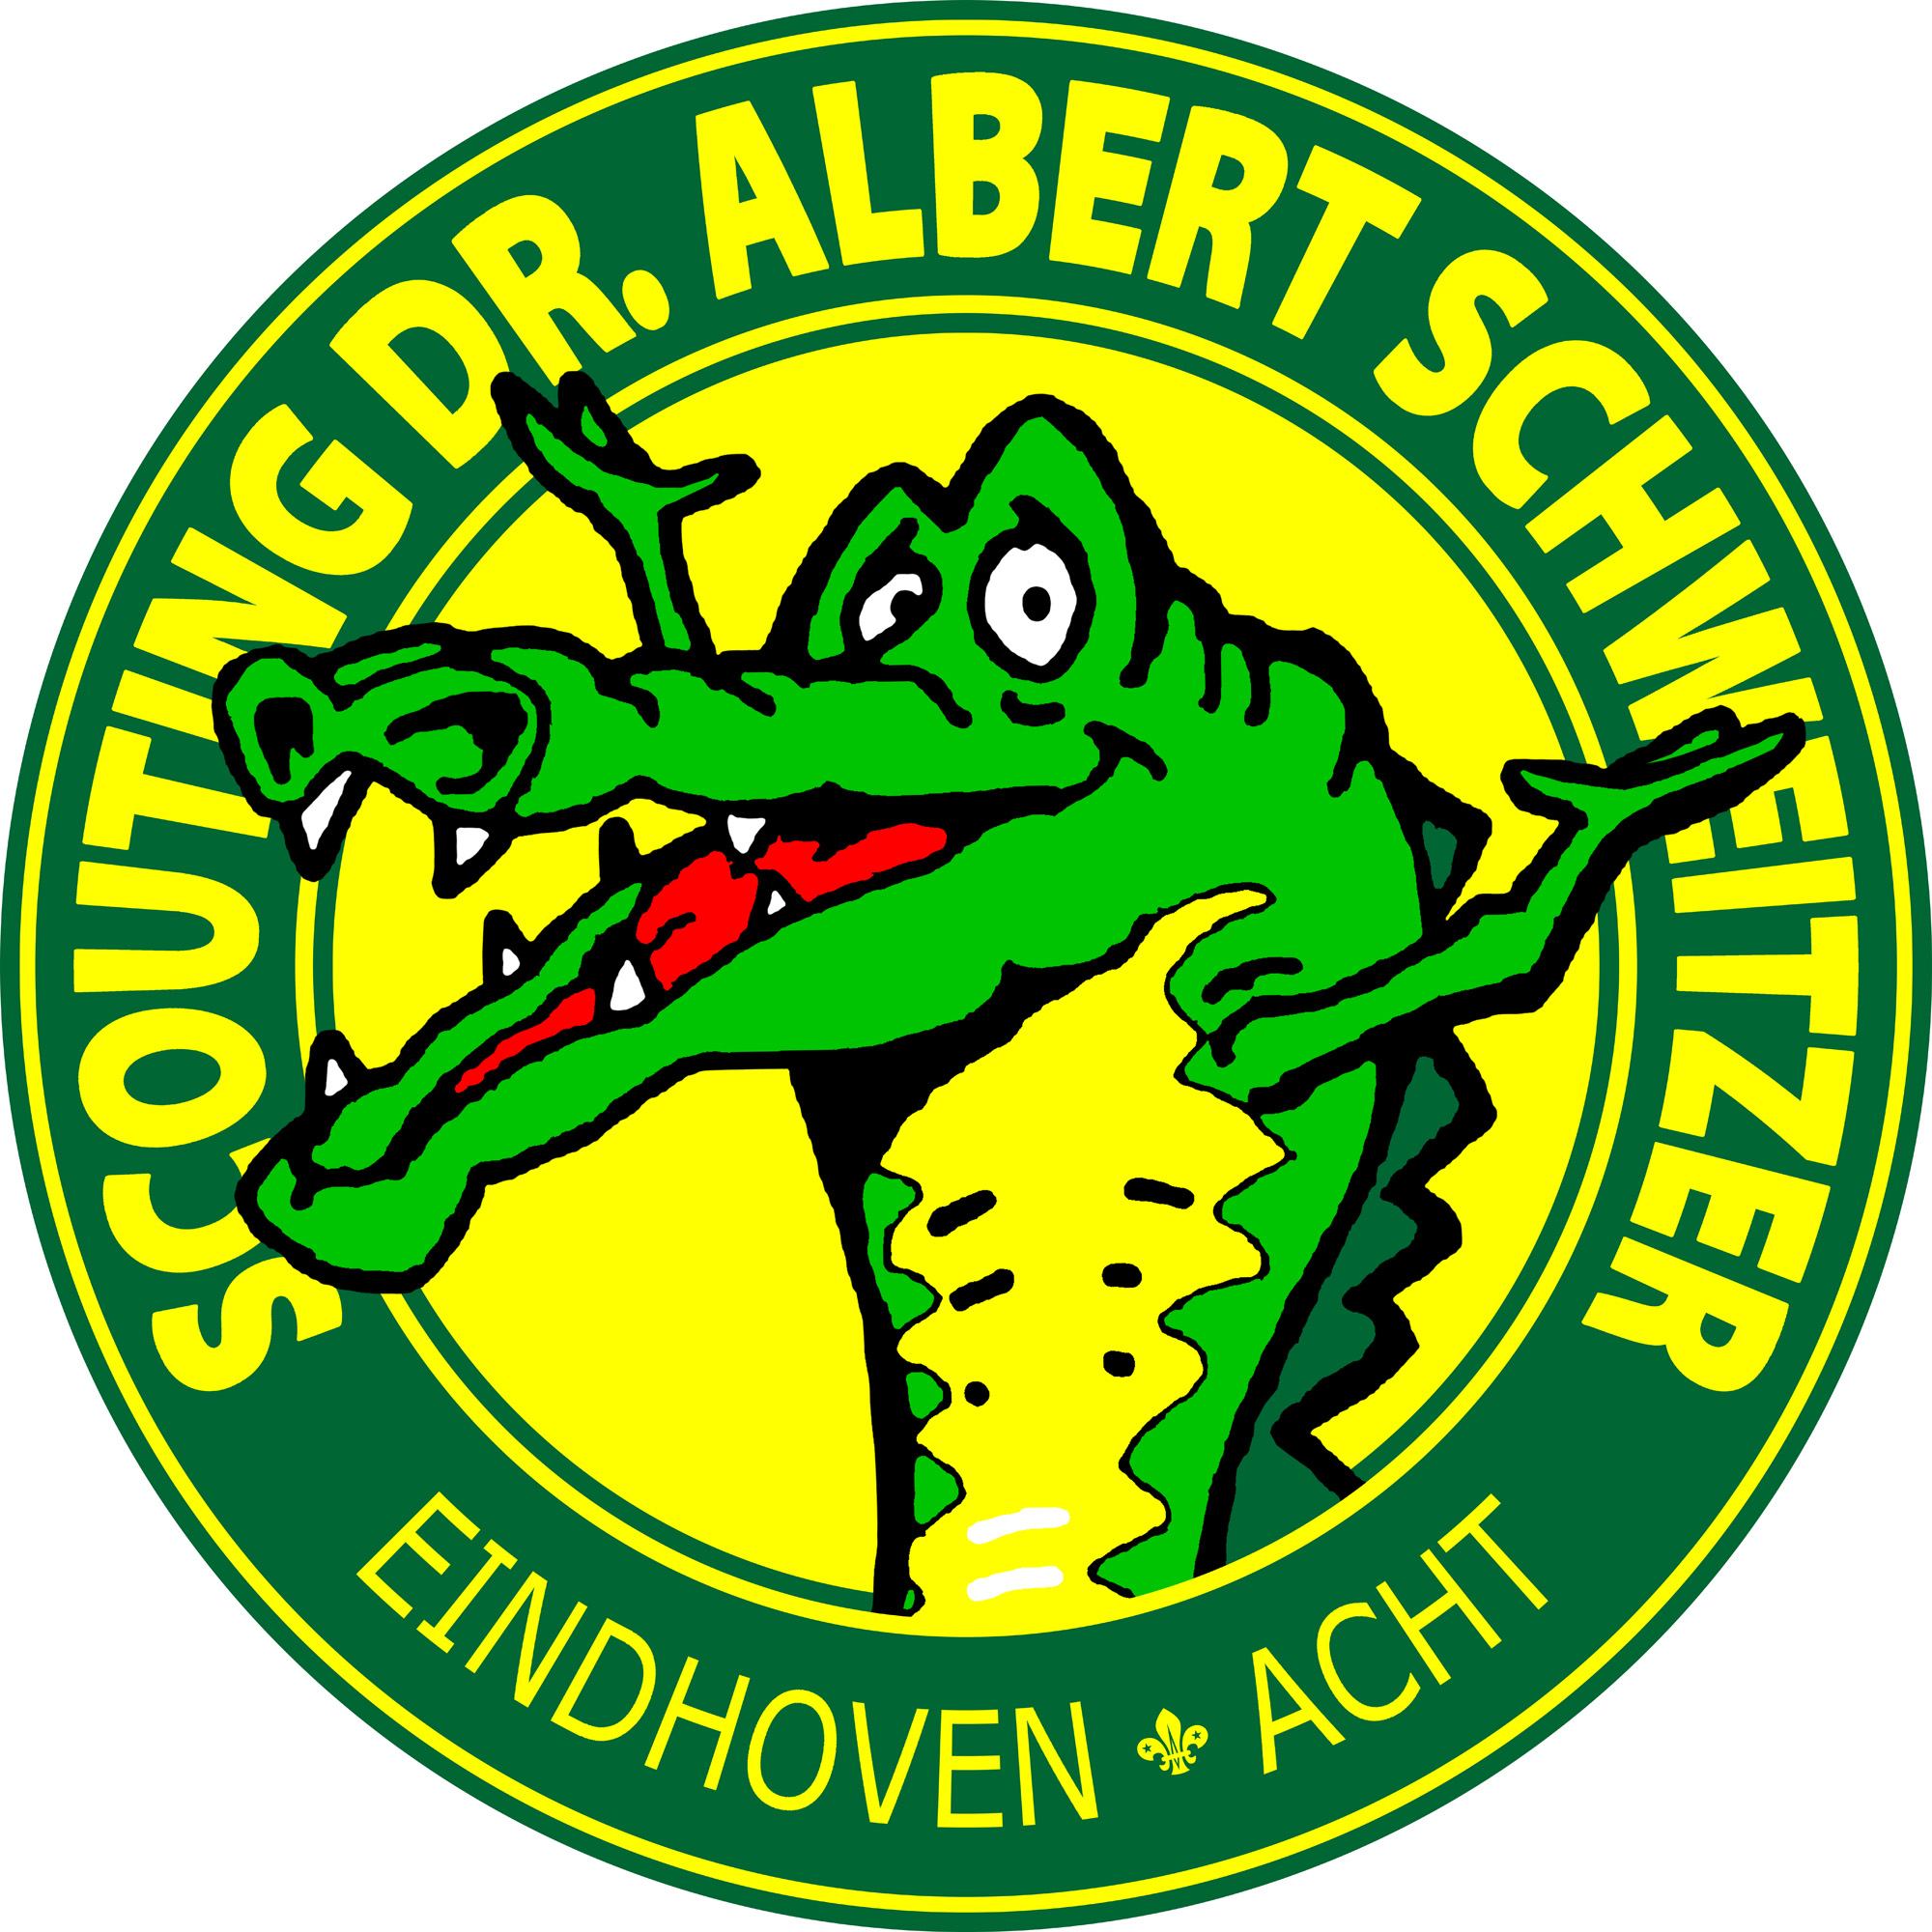 Logo Scouting Dr. Albert Schweitzer